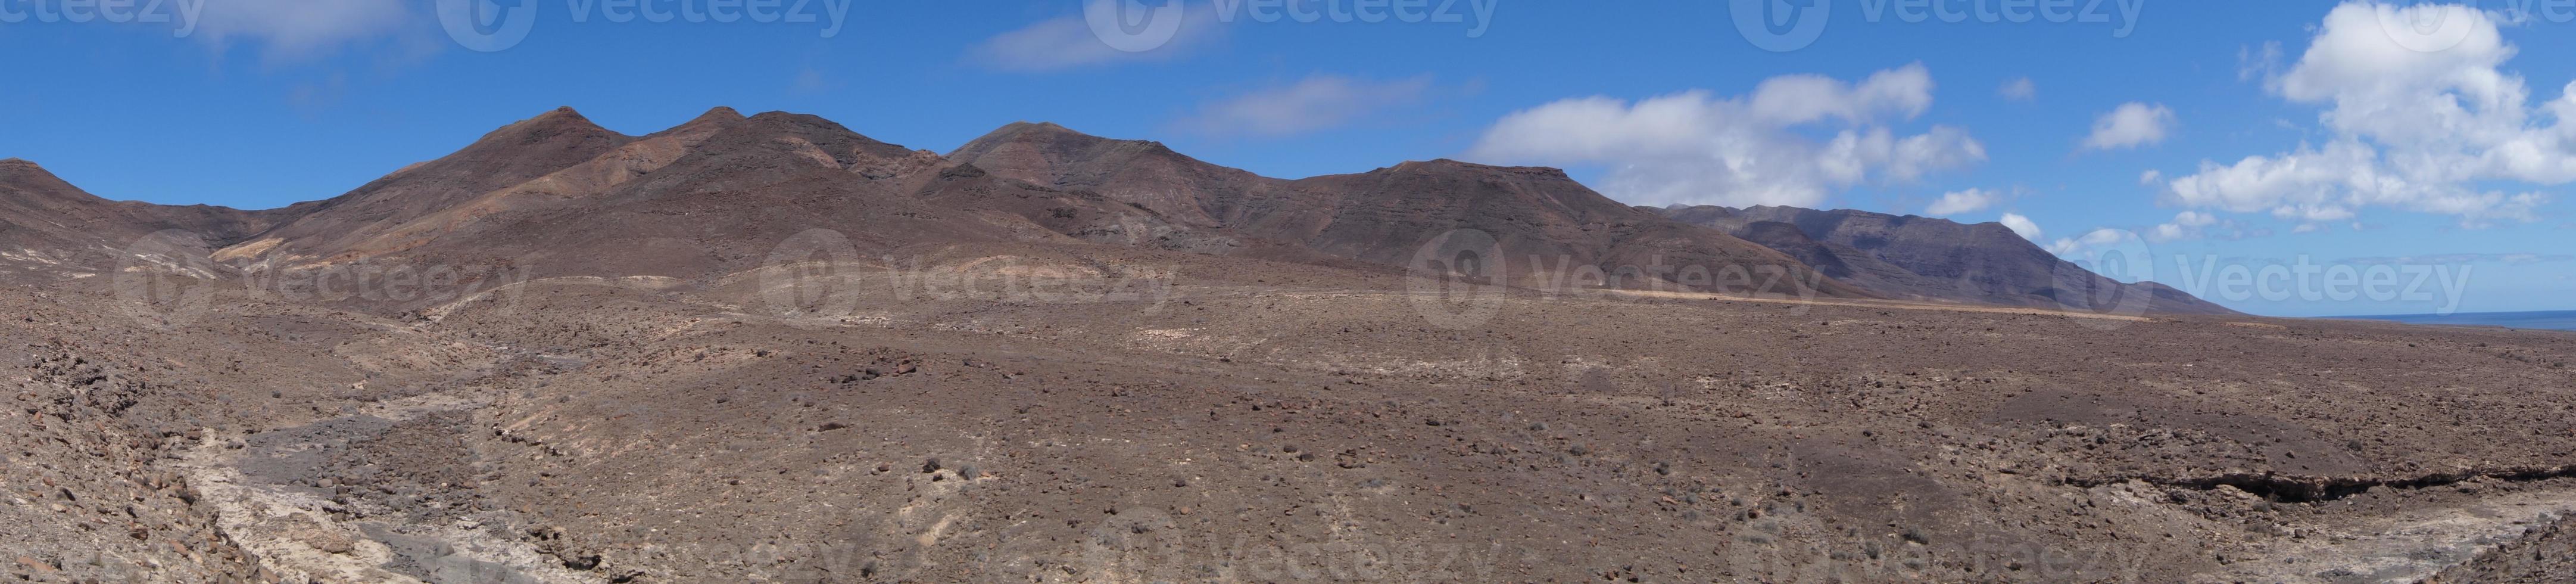 vulkaniska bergen i fuerteventura - spanien foto